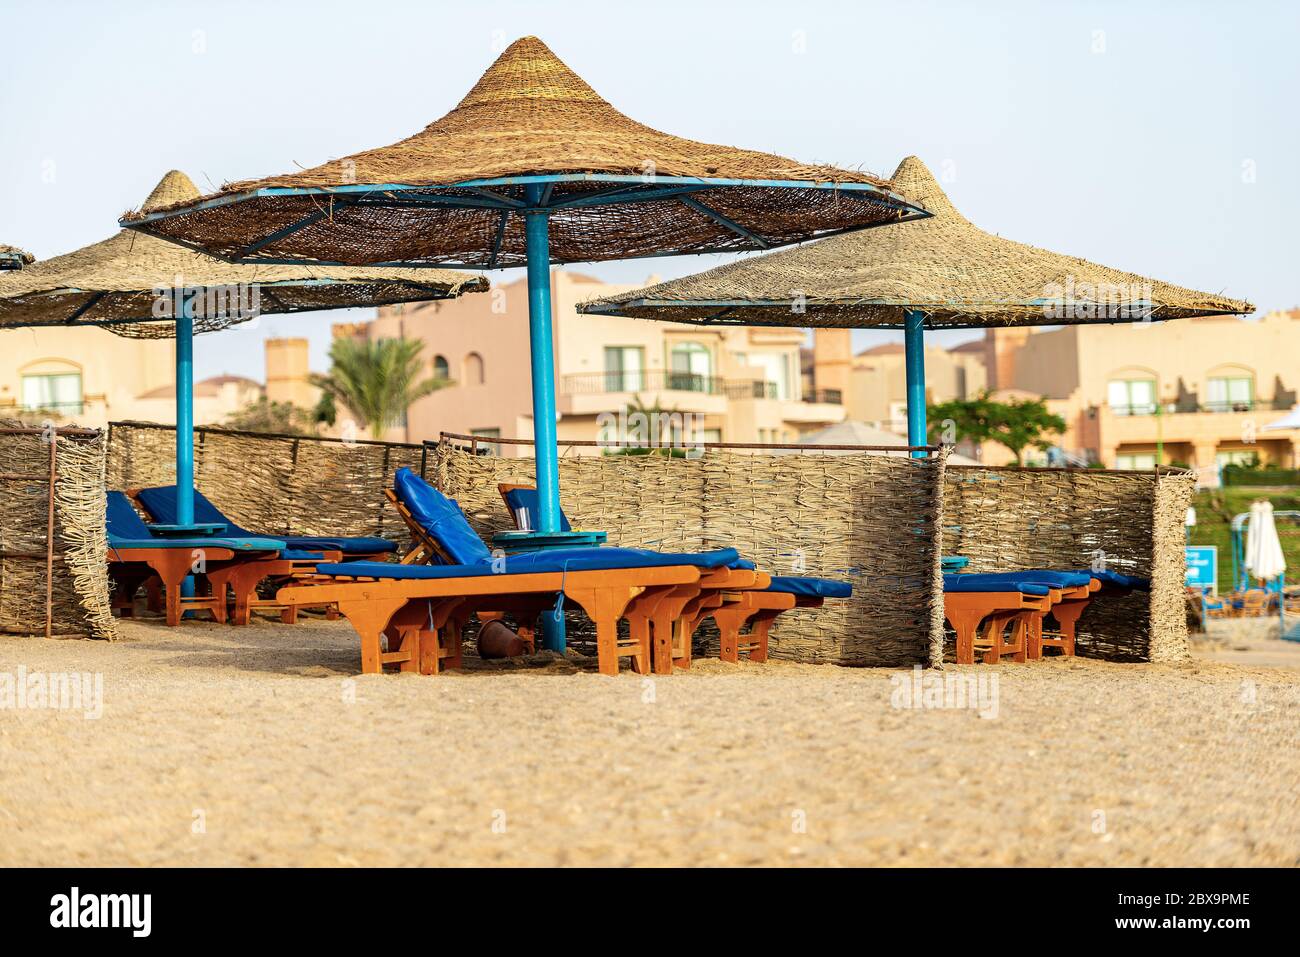 Gruppe von Stroh Sonnenschirme und Liegestühle in einem roten Meer Sandstrand, Ferienort in der Nähe von Marsa Alam, Ägypten, Afrika Stockfoto